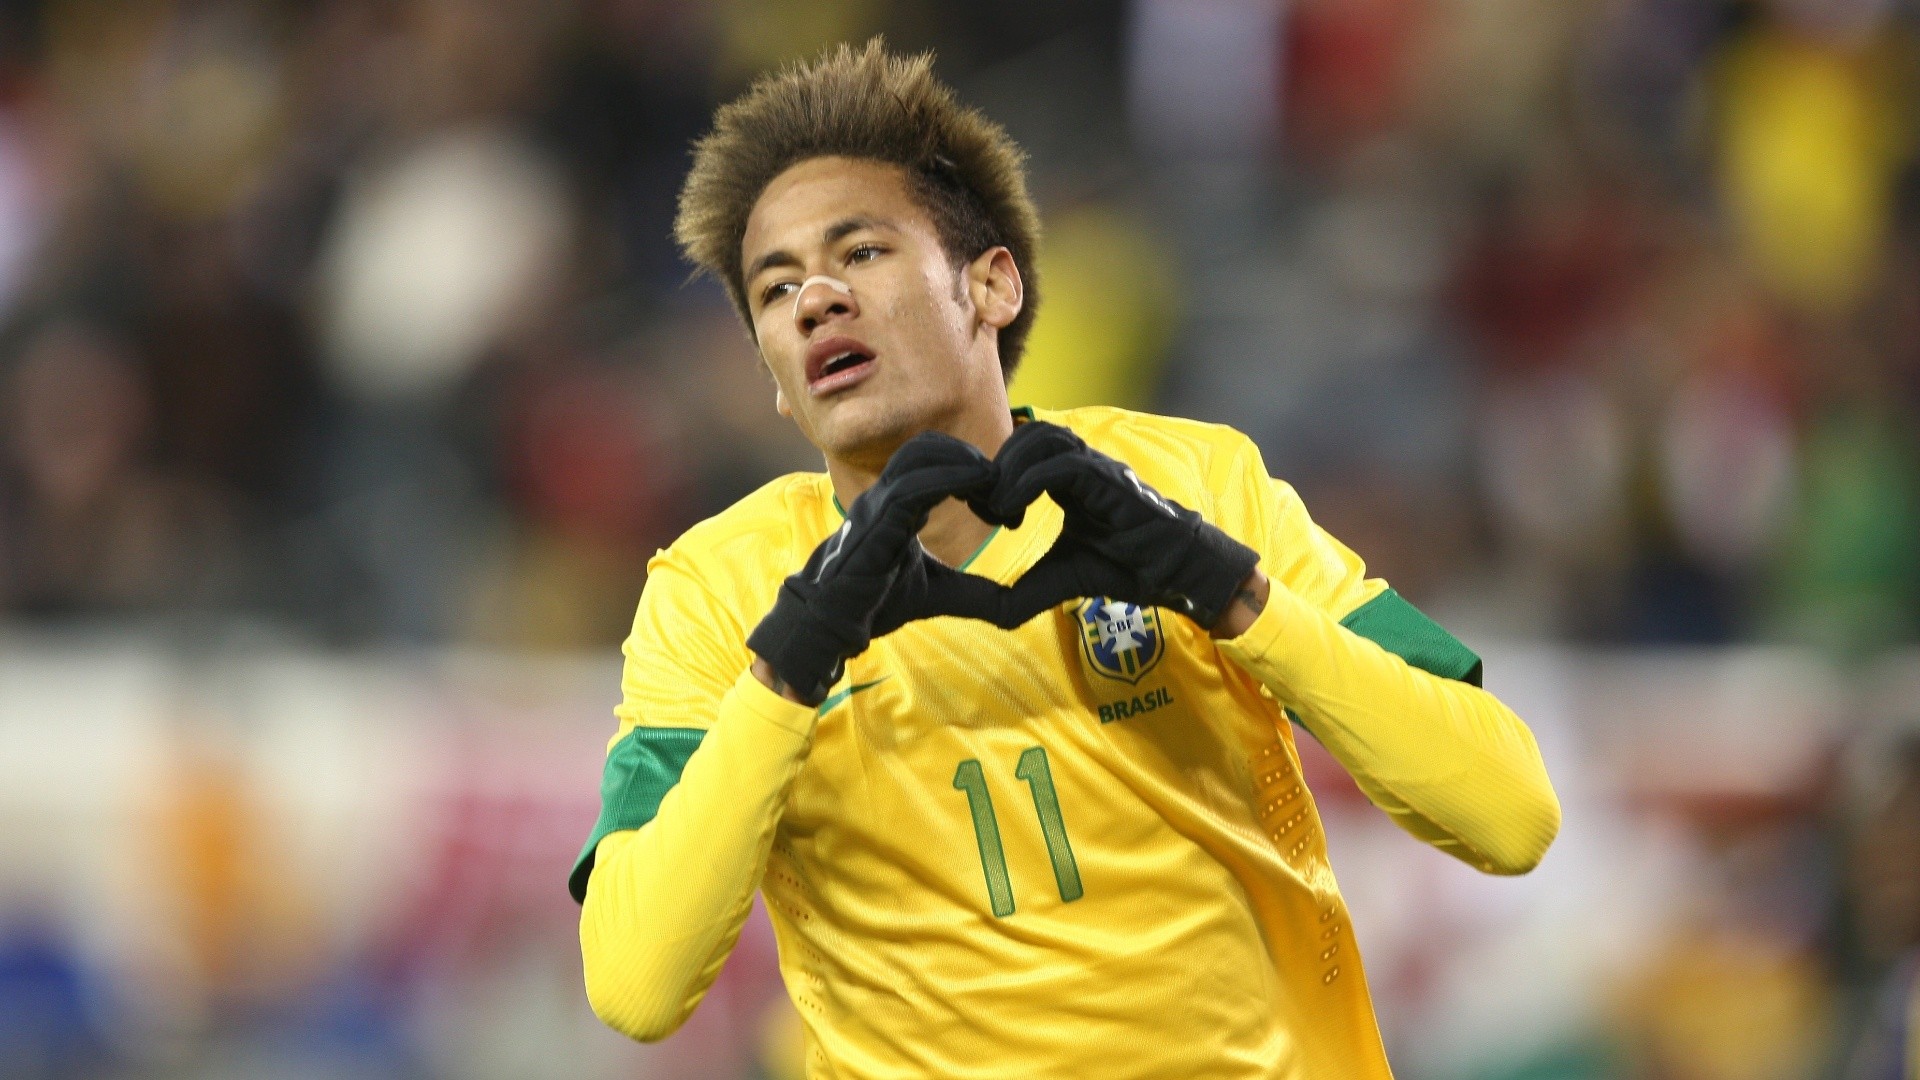 Neymar Jr Background Pictures Desktop Wallpapers Hd - Love Celebration In Football - HD Wallpaper 